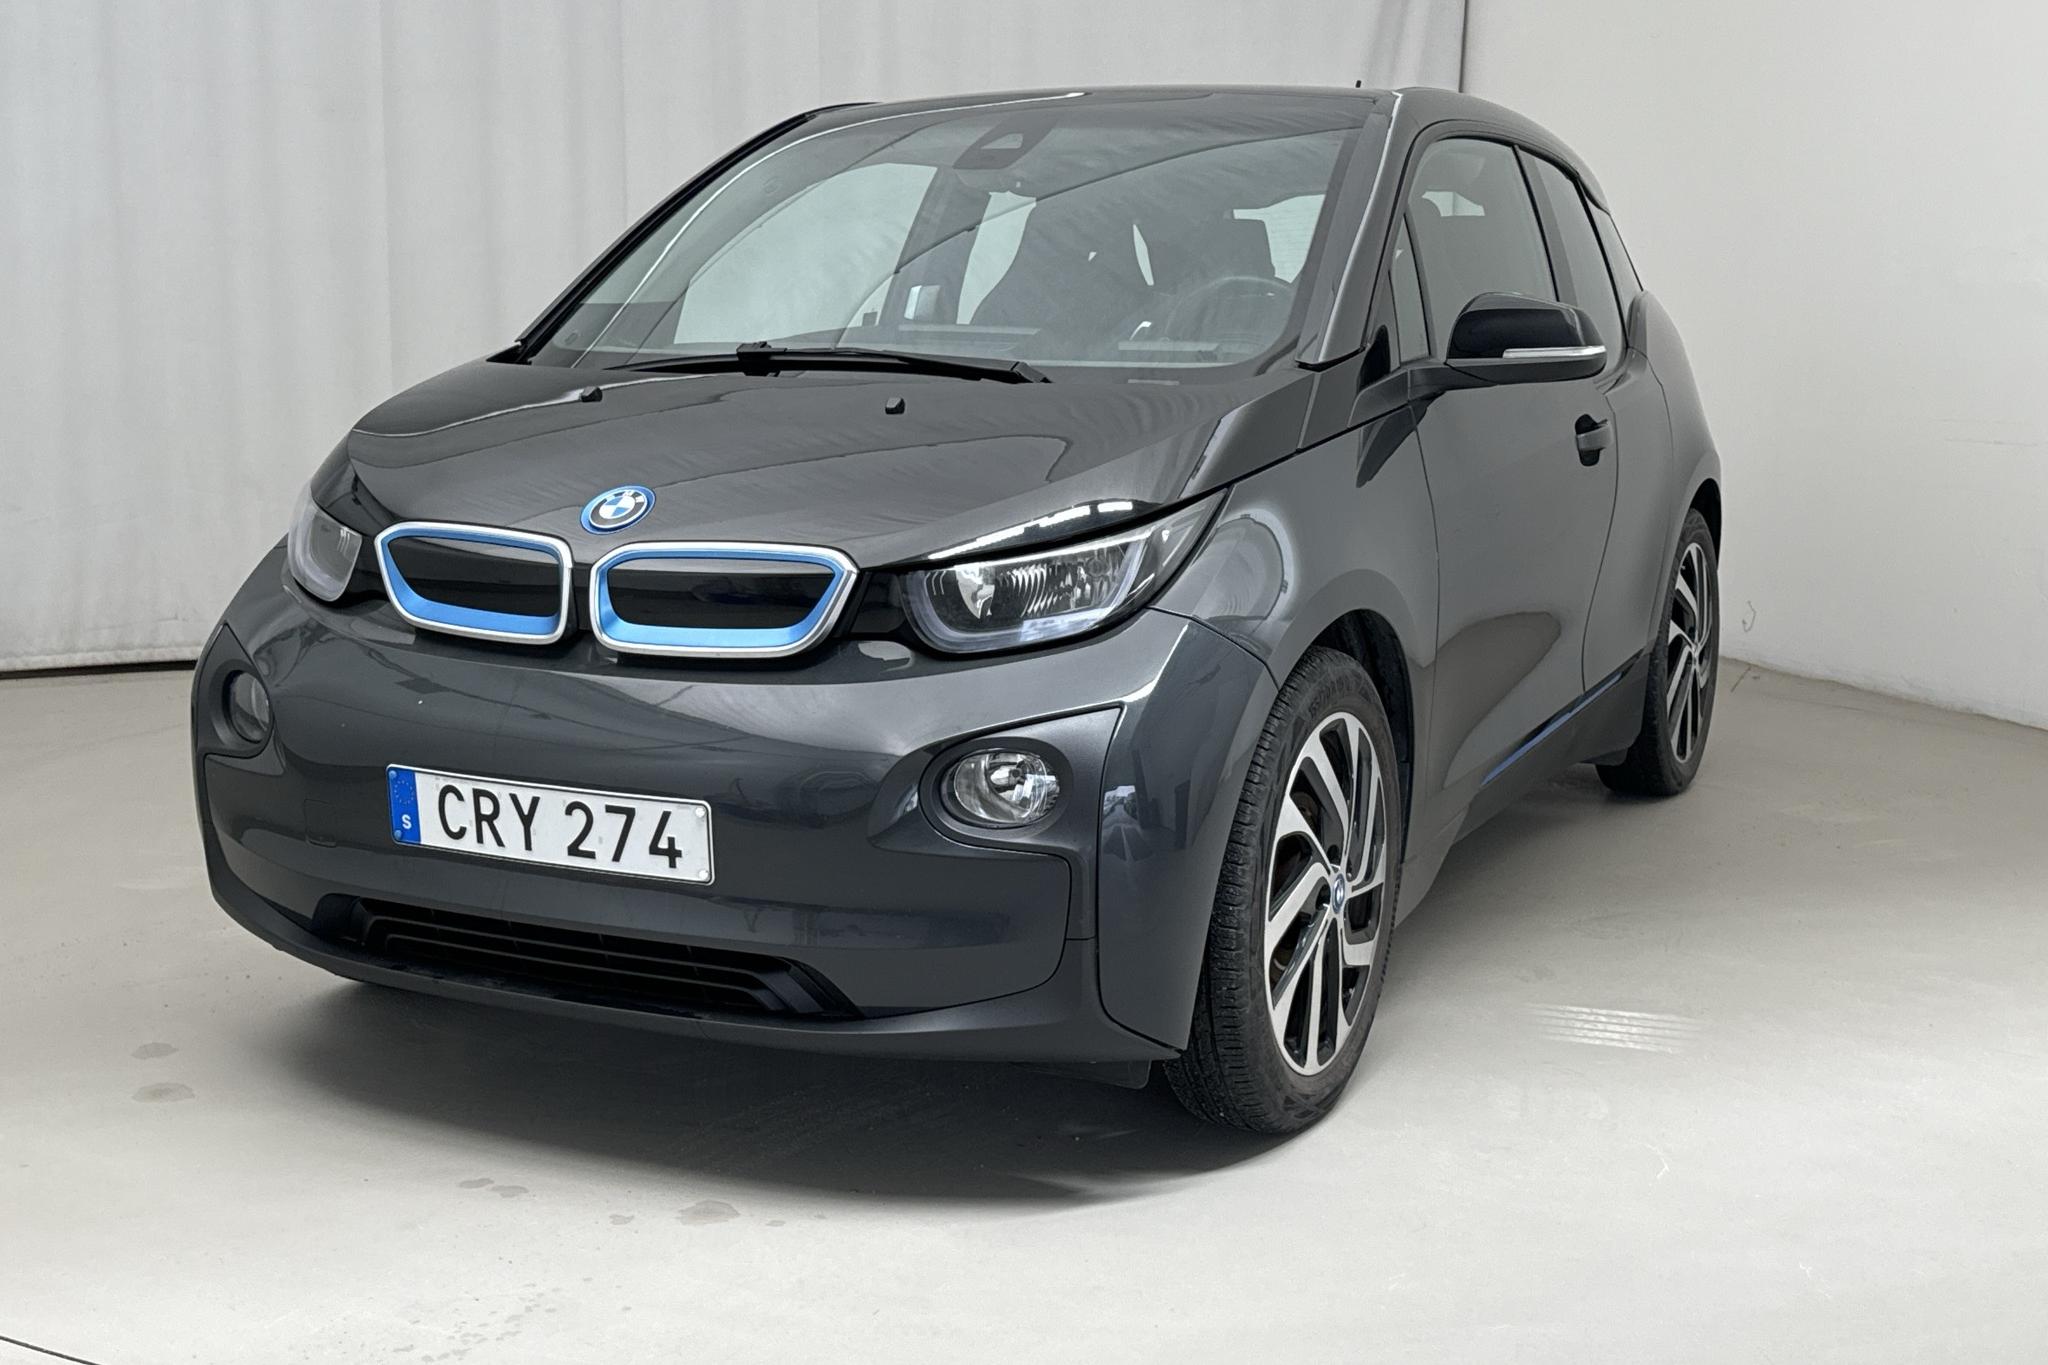 BMW i3 60Ah REX, I01 (170hk) - 115 320 km - Automatic - gray - 2015